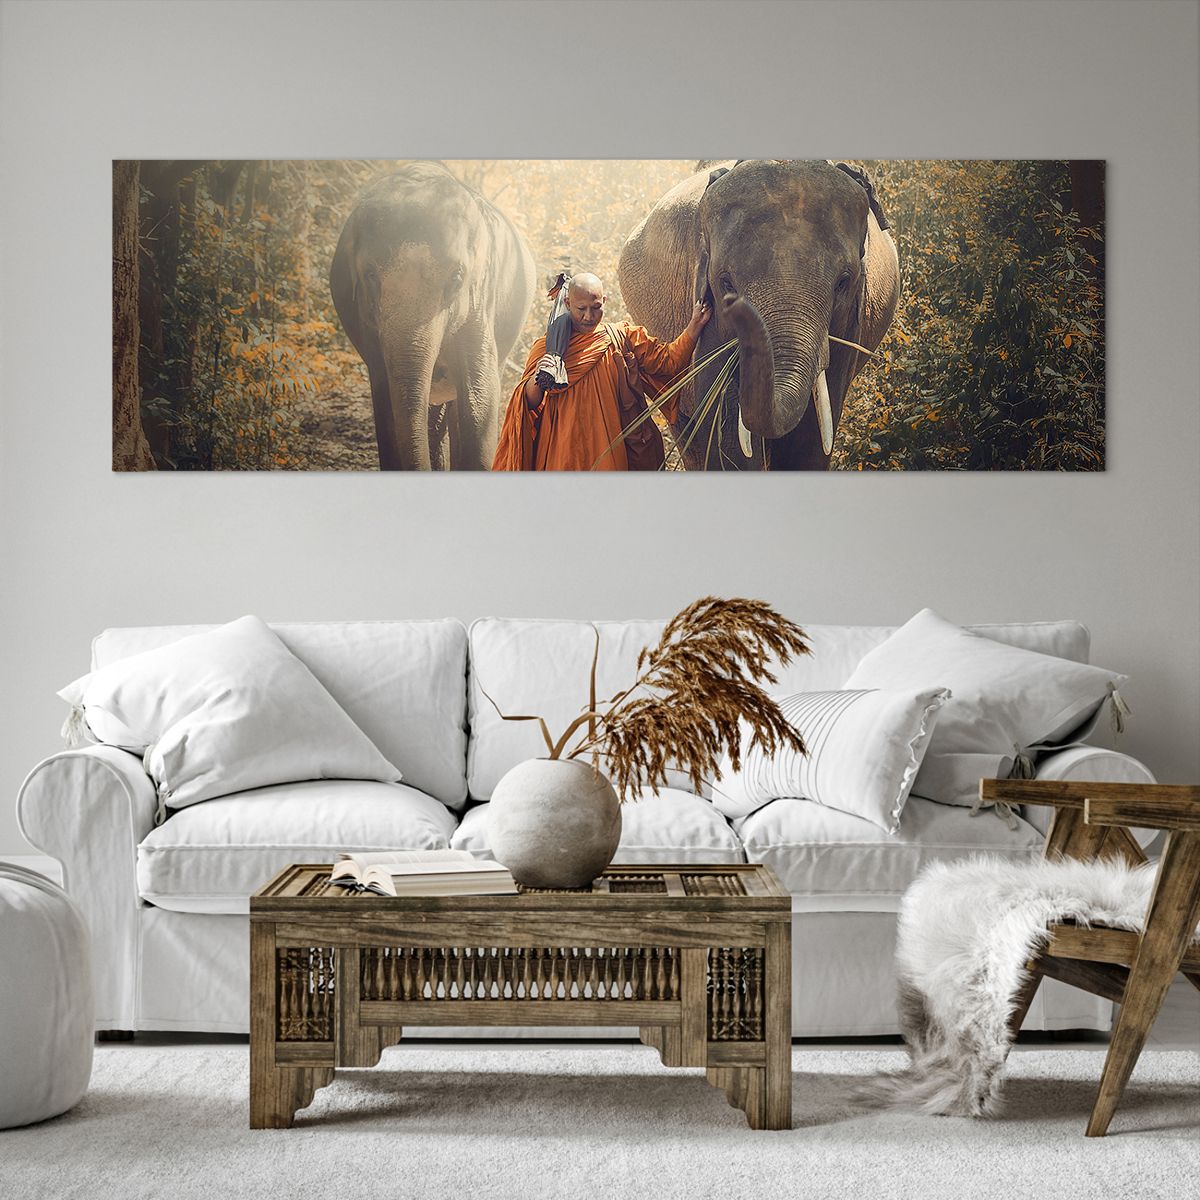 Bild auf Leinwand Asien, Bild auf Leinwand Elefant, Bild auf Leinwand Mönch, Bild auf Leinwand Urwald, Bild auf Leinwand Buddhismus